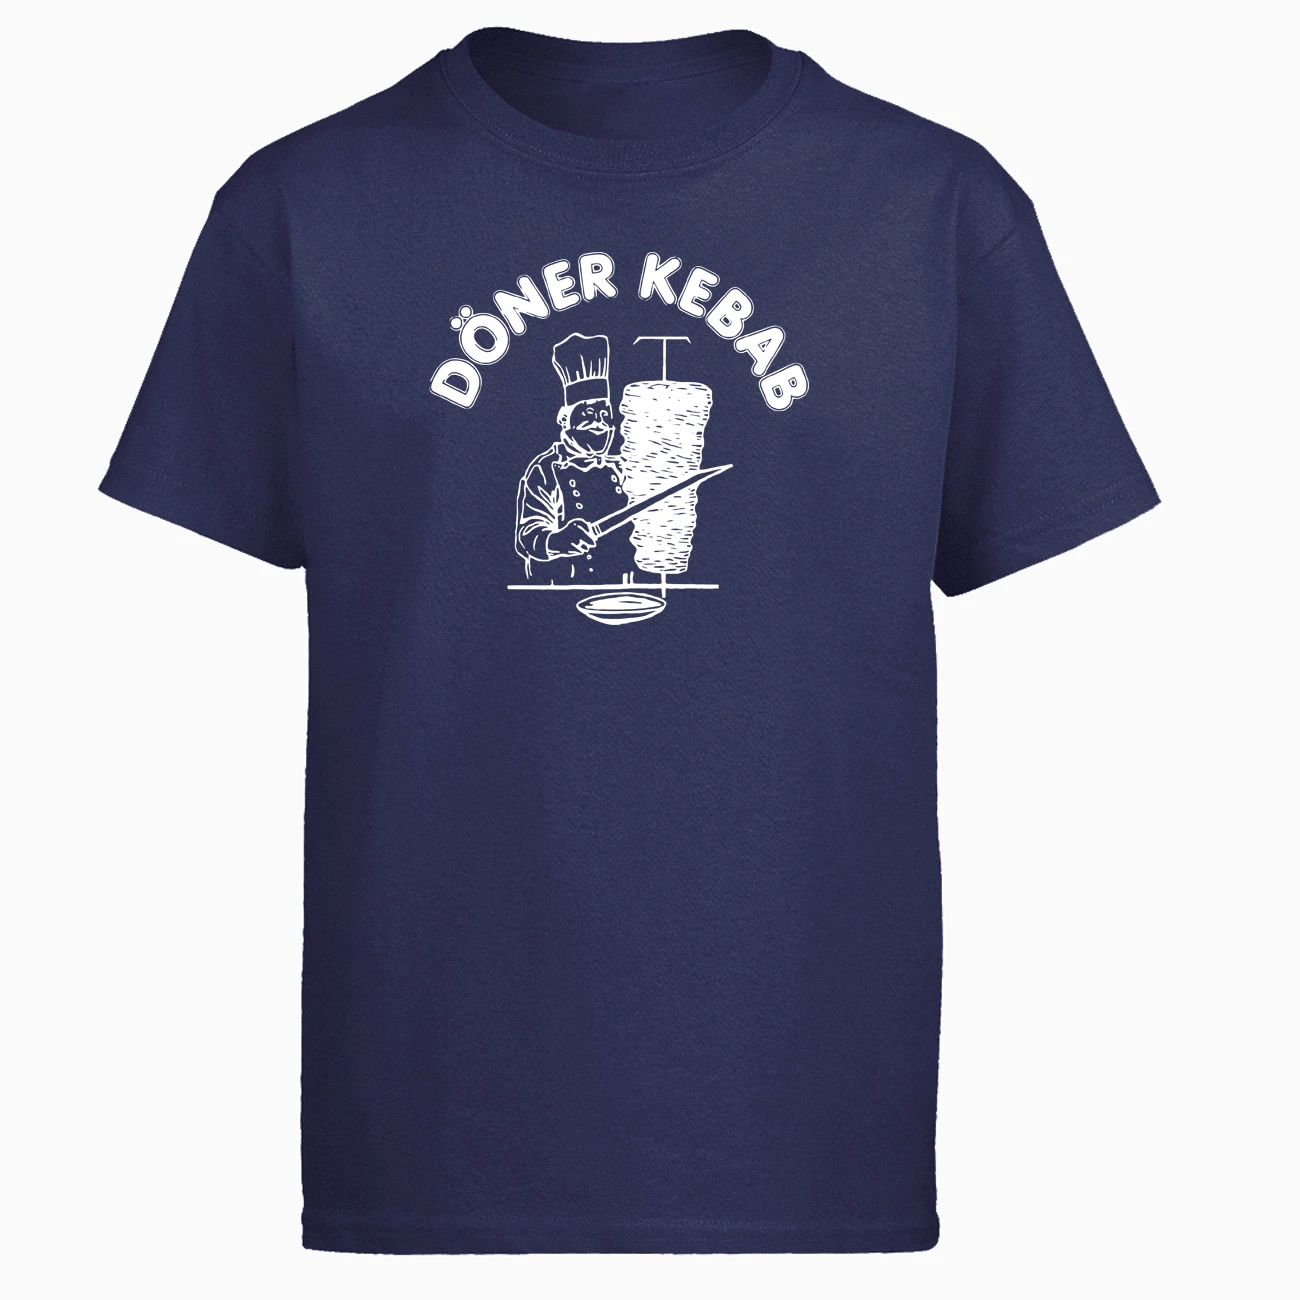 Doner kebabb Футболка мужская футболка забавные вкусные футболки летние хлопковые с коротким рукавом черные белые свободные Harajuku футболка с принтом Топ - Цвет: Dark blue 5